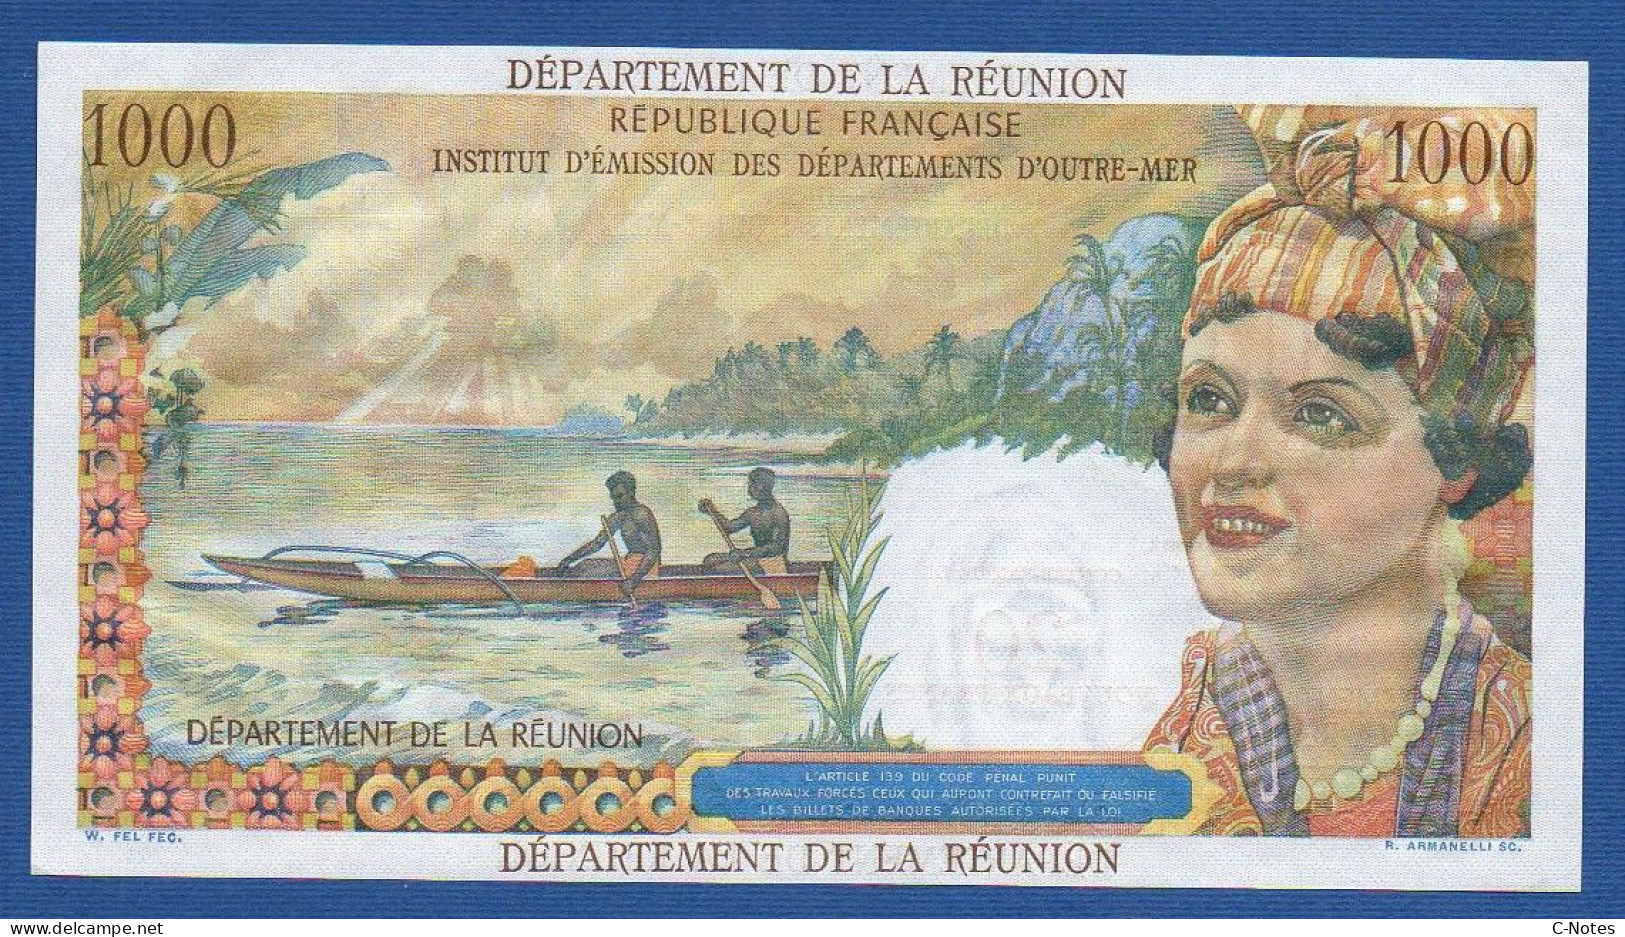 RÉUNION - P.55b – 20 Nouveaux Francs ND (1971) UNC, S/n T.2 86704 - Reunión